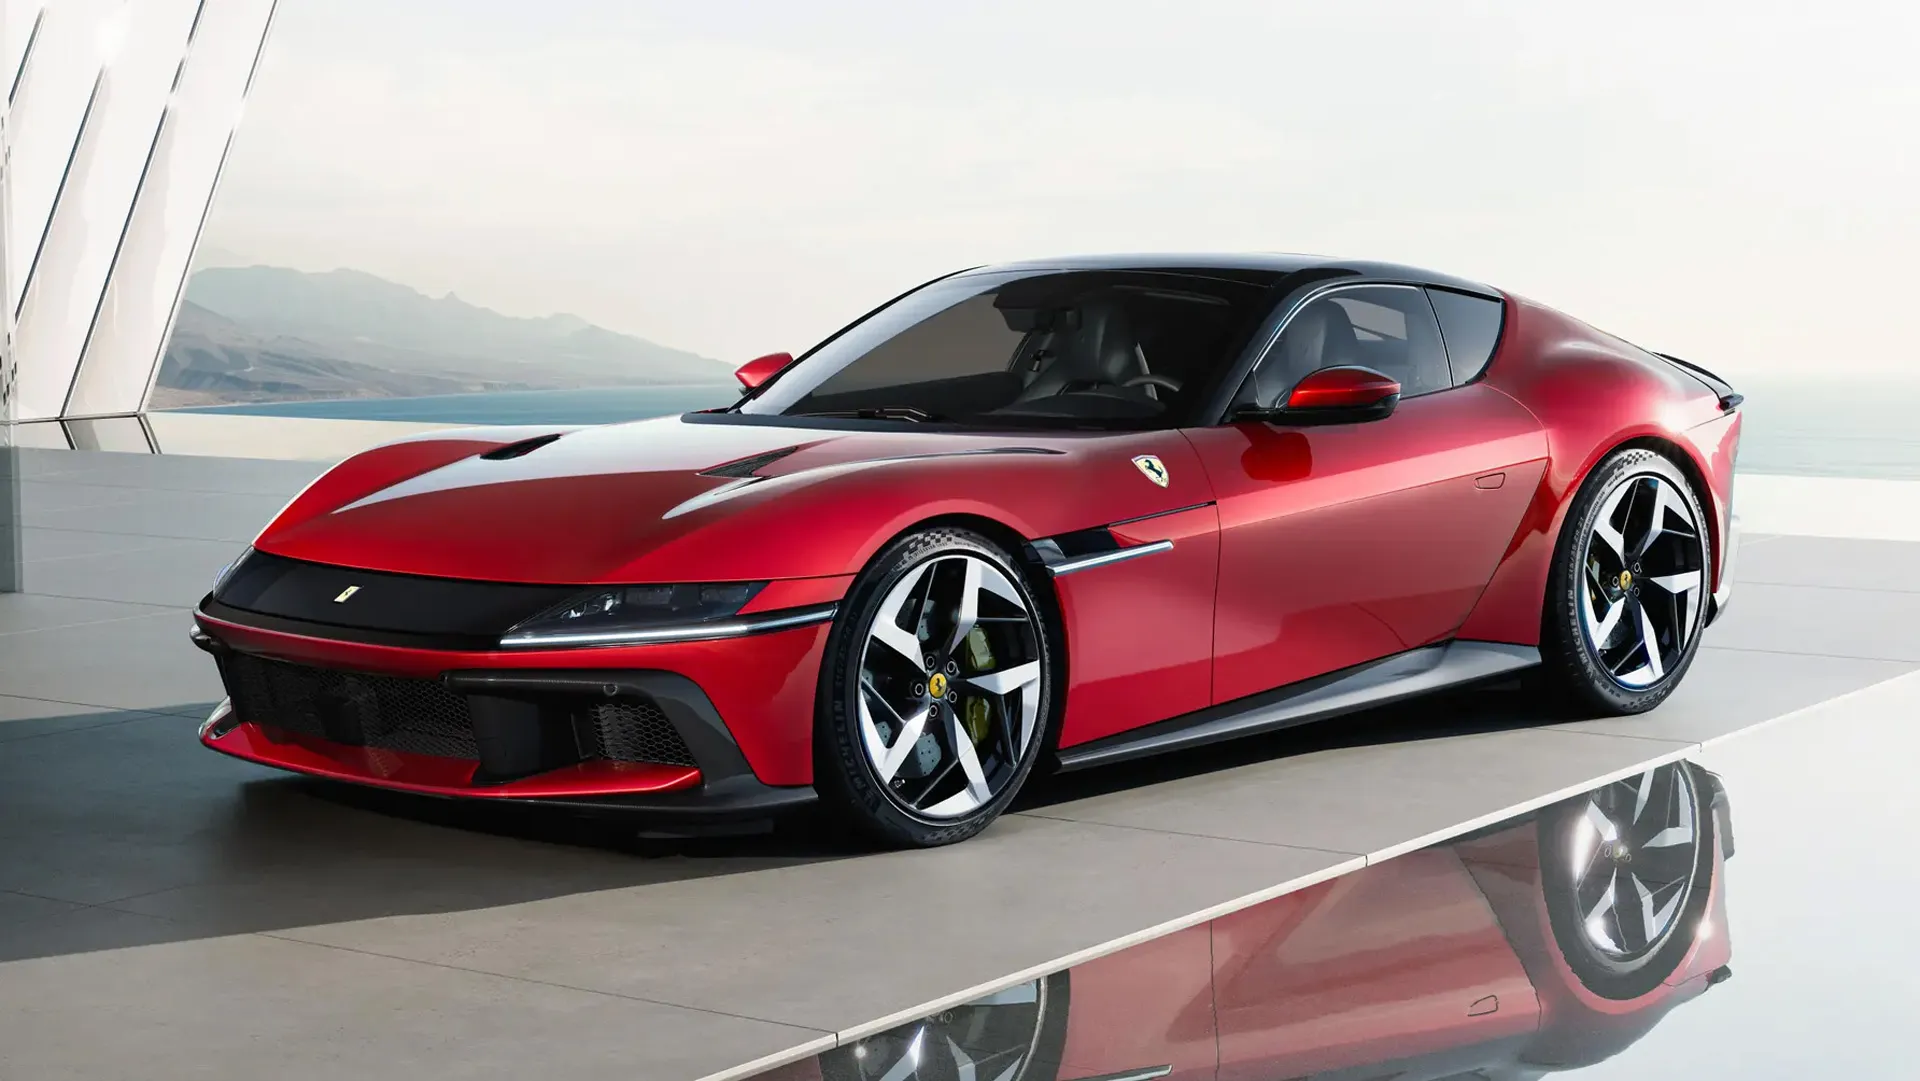 El Ferrari de 12 cilindros hace su debut con unos impresionantes 819 caballos de fuerza